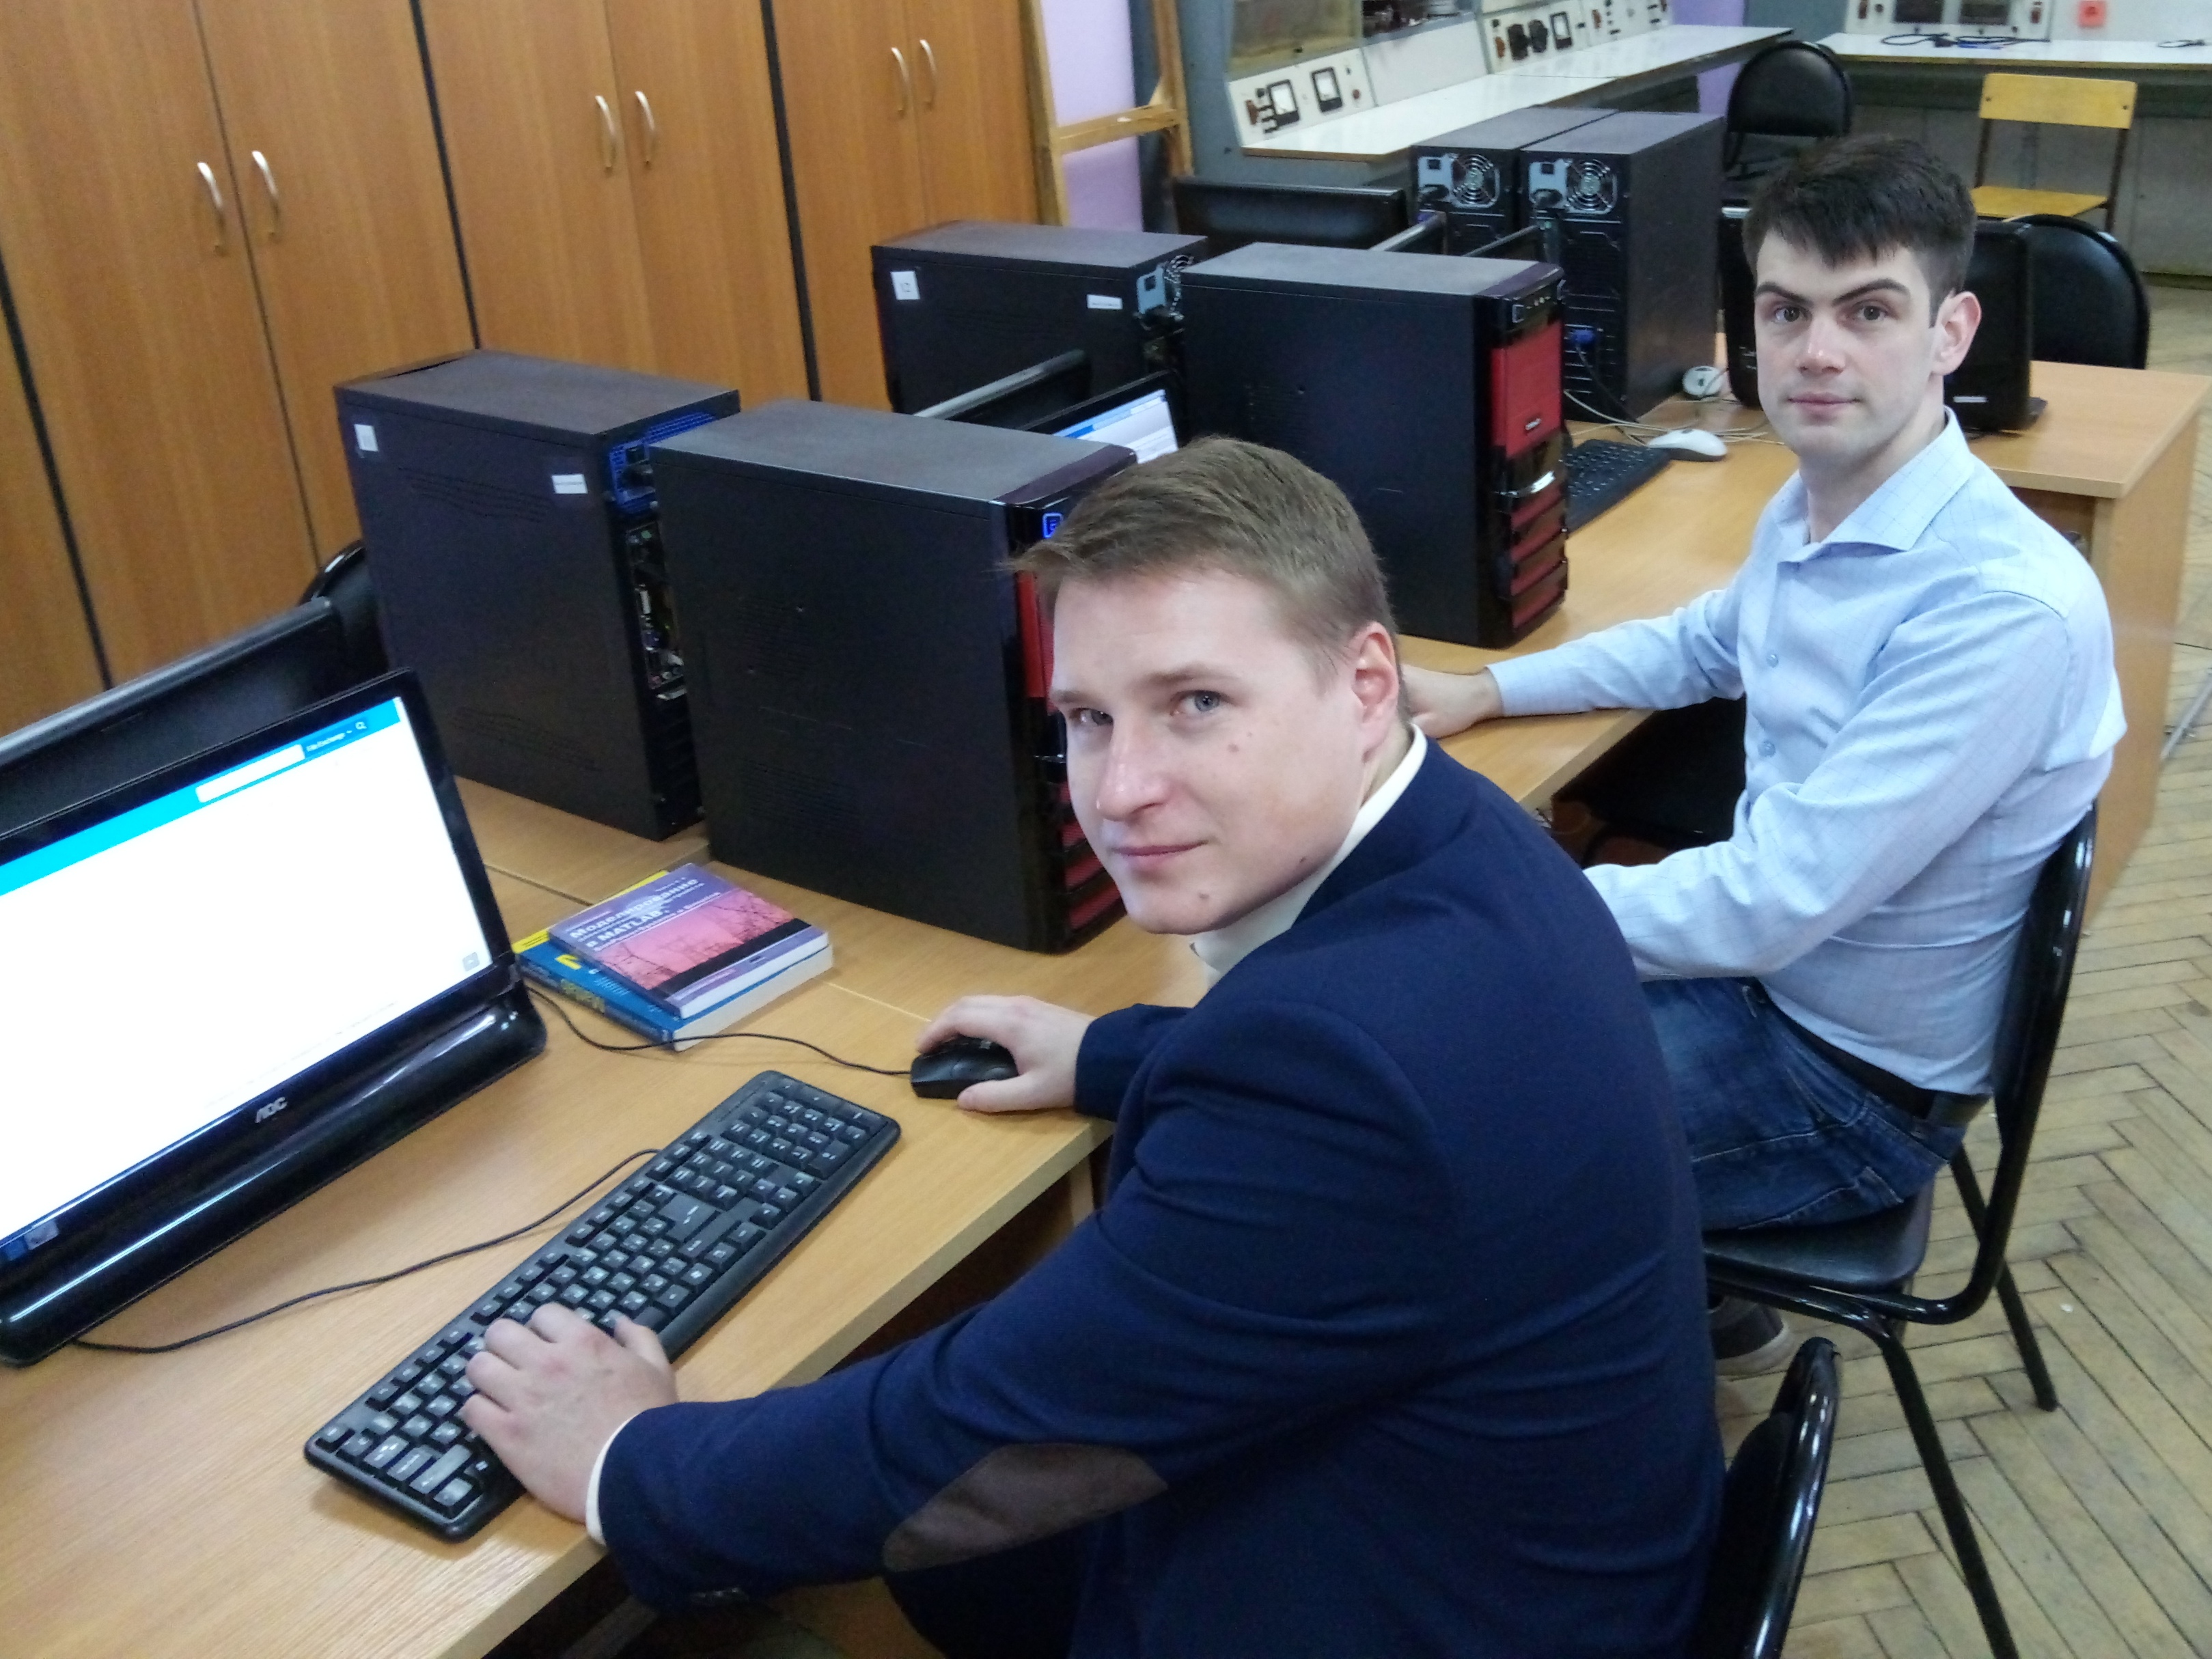 Призеры. Слева – Александр Иванов, справа – Василий Чиркин